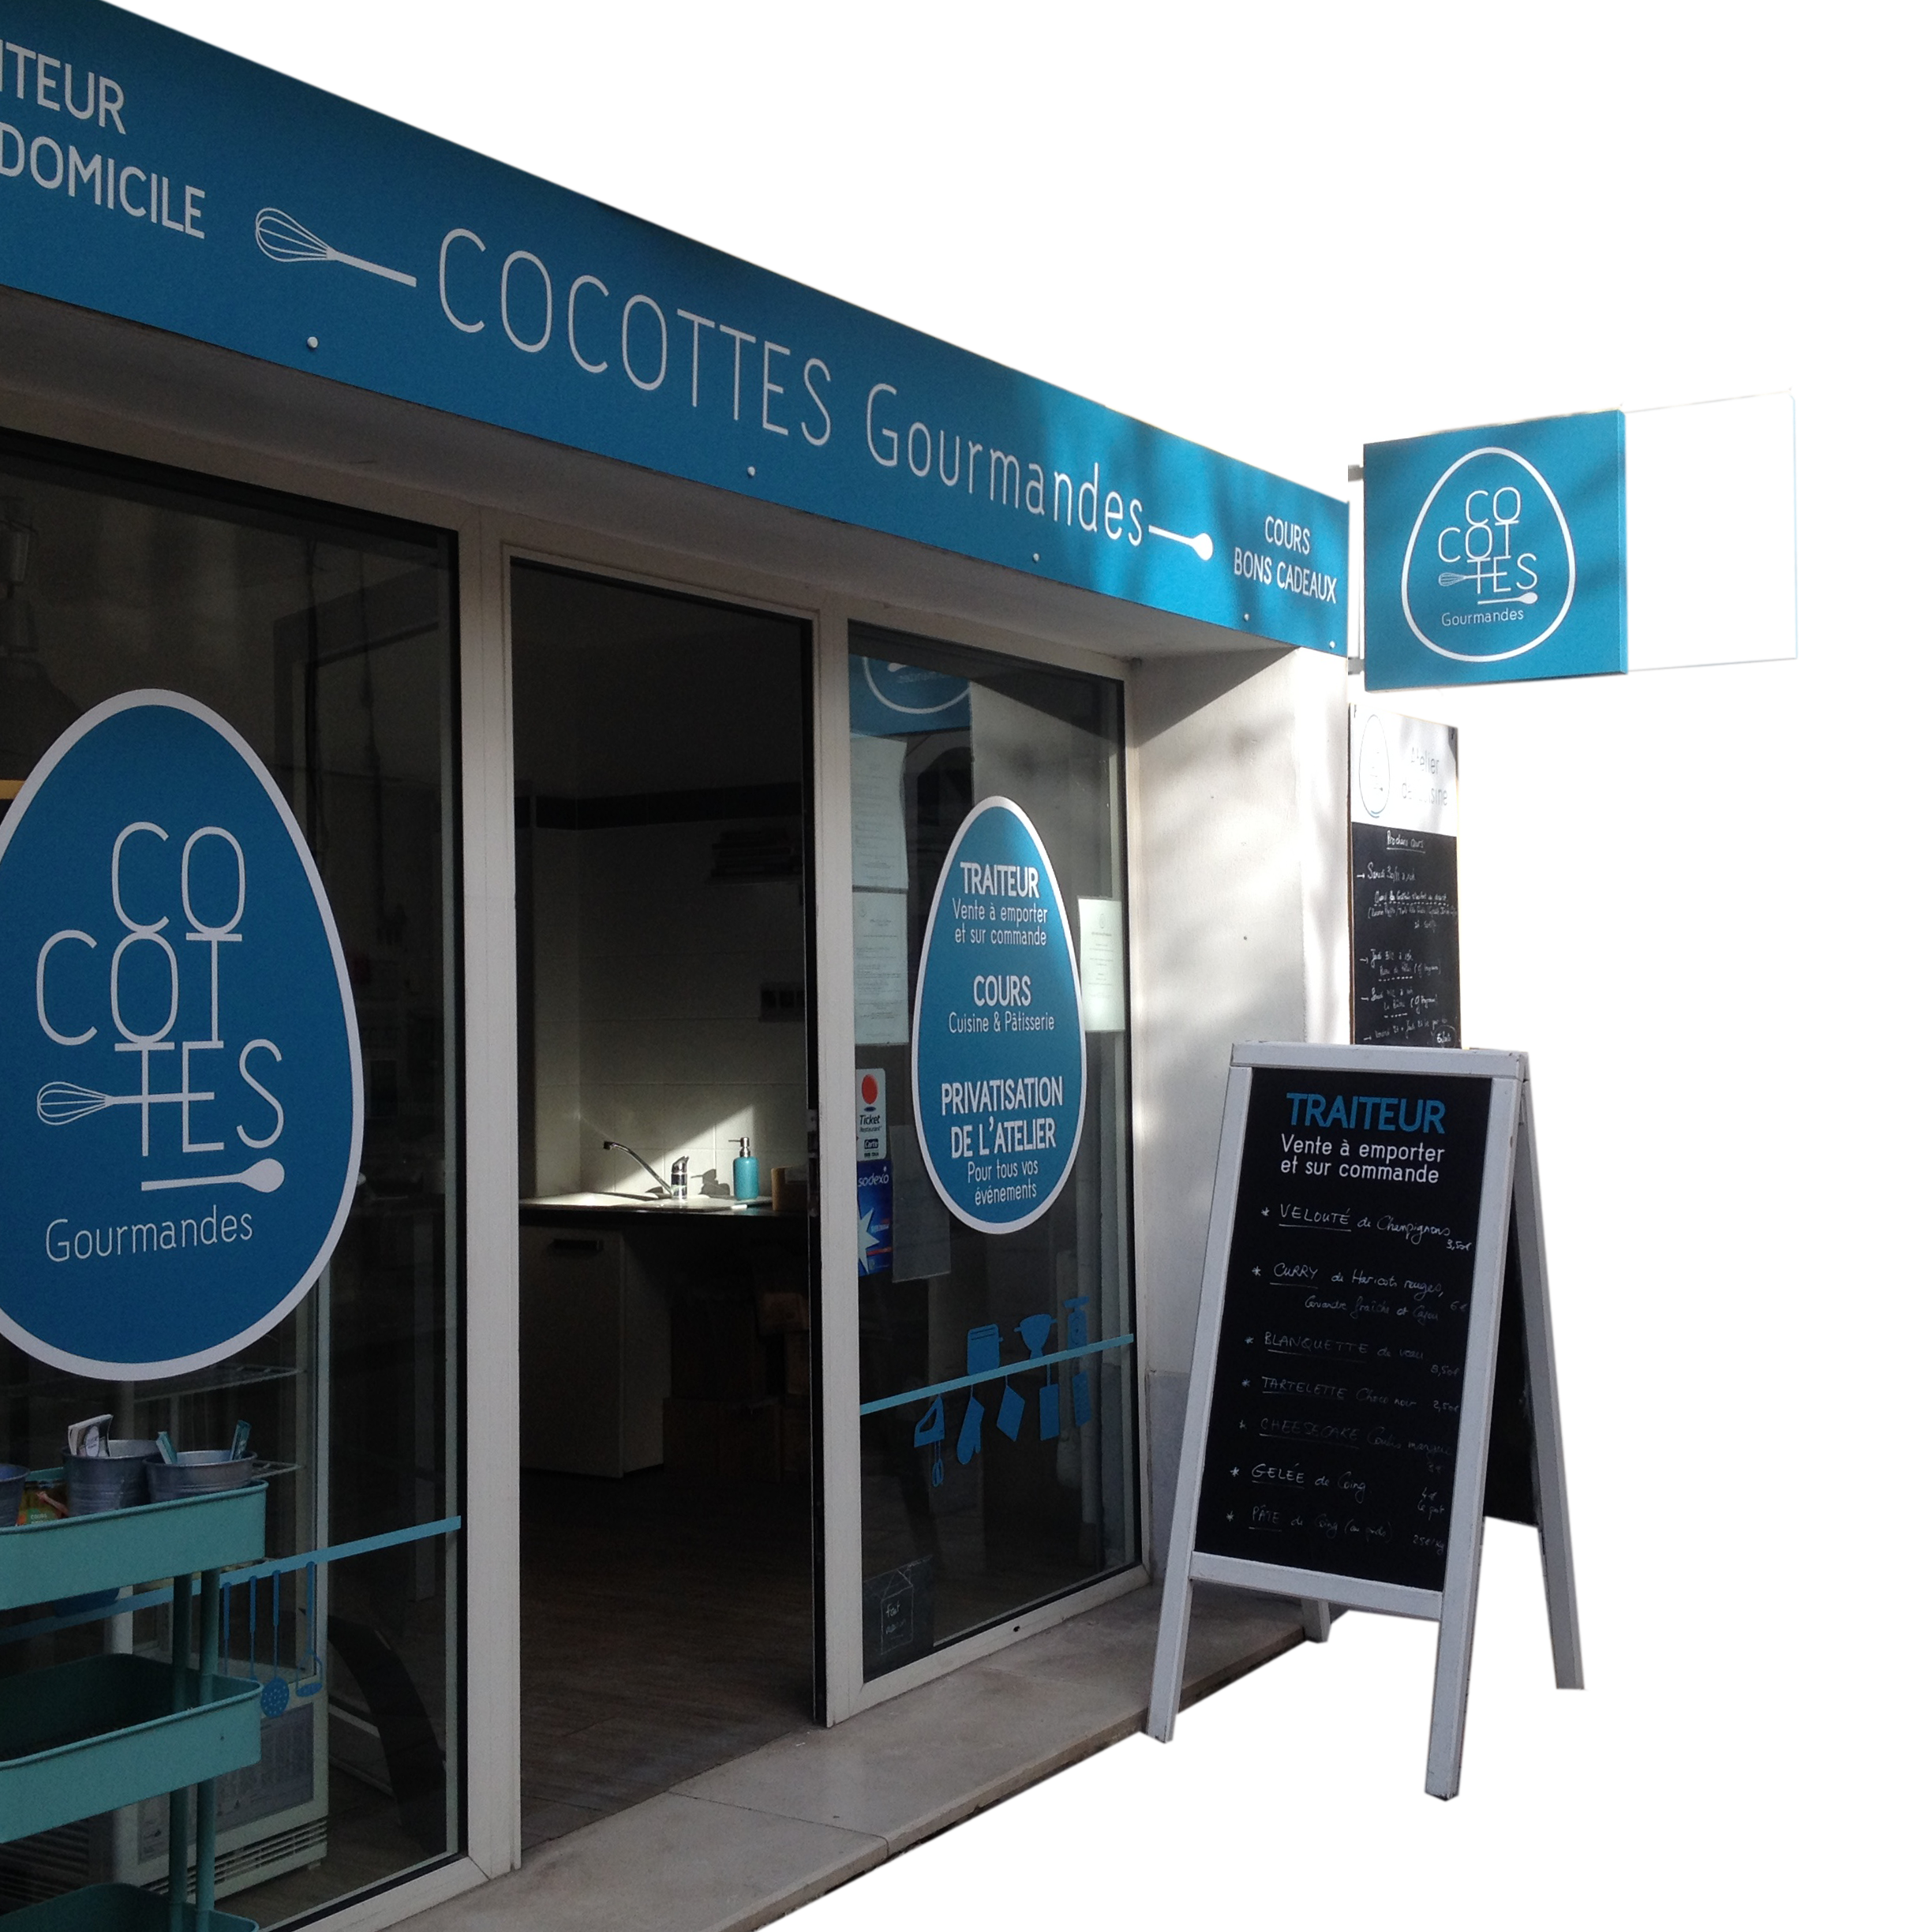 Cocottes Gourmandes Traiteur Castelnau le lez